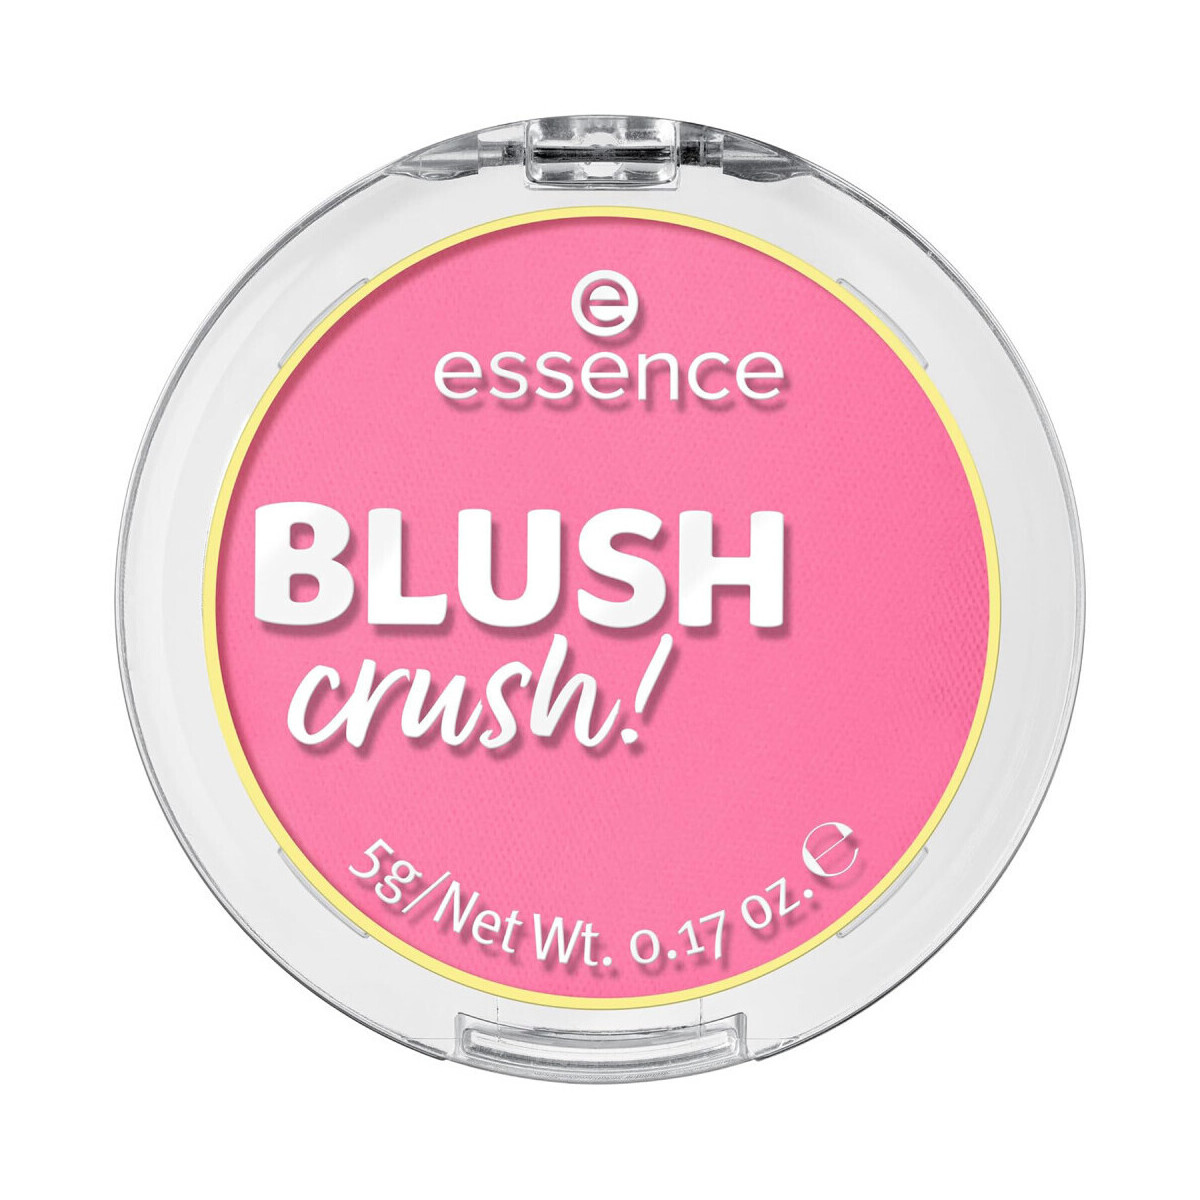 Beauté Femme Blush & poudres Essence Blush Crush! Rose